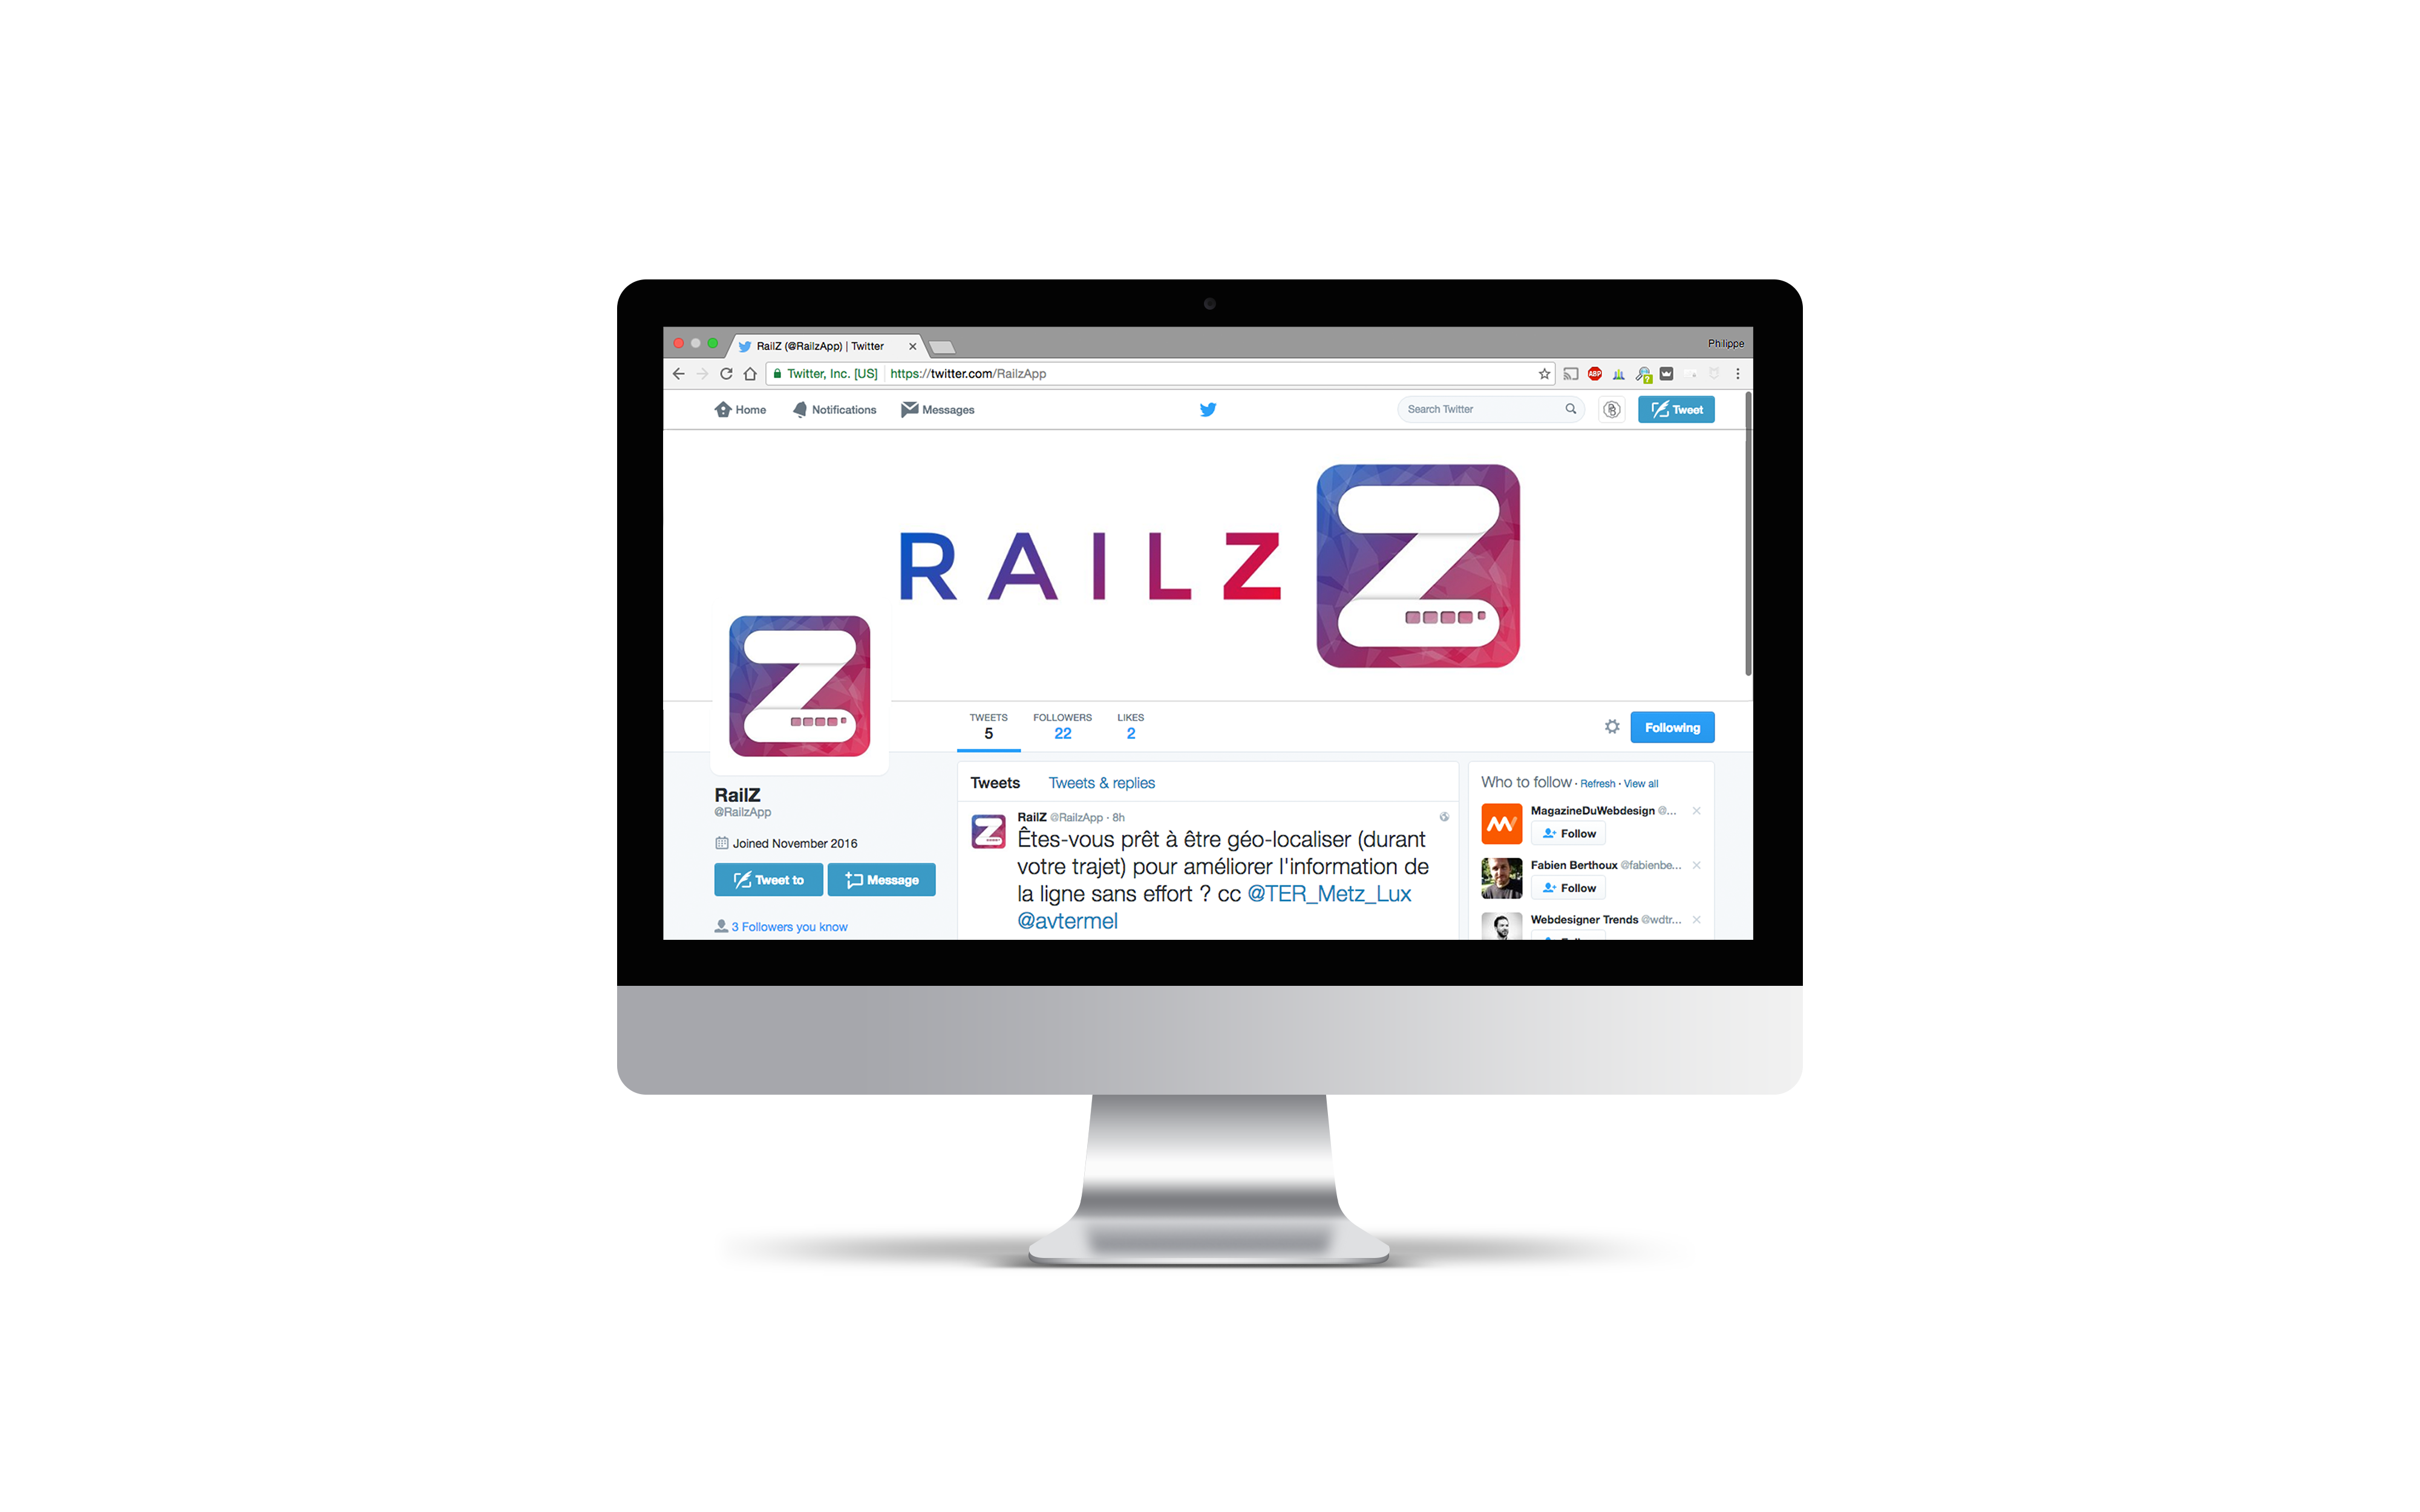 RailZ App Twitter